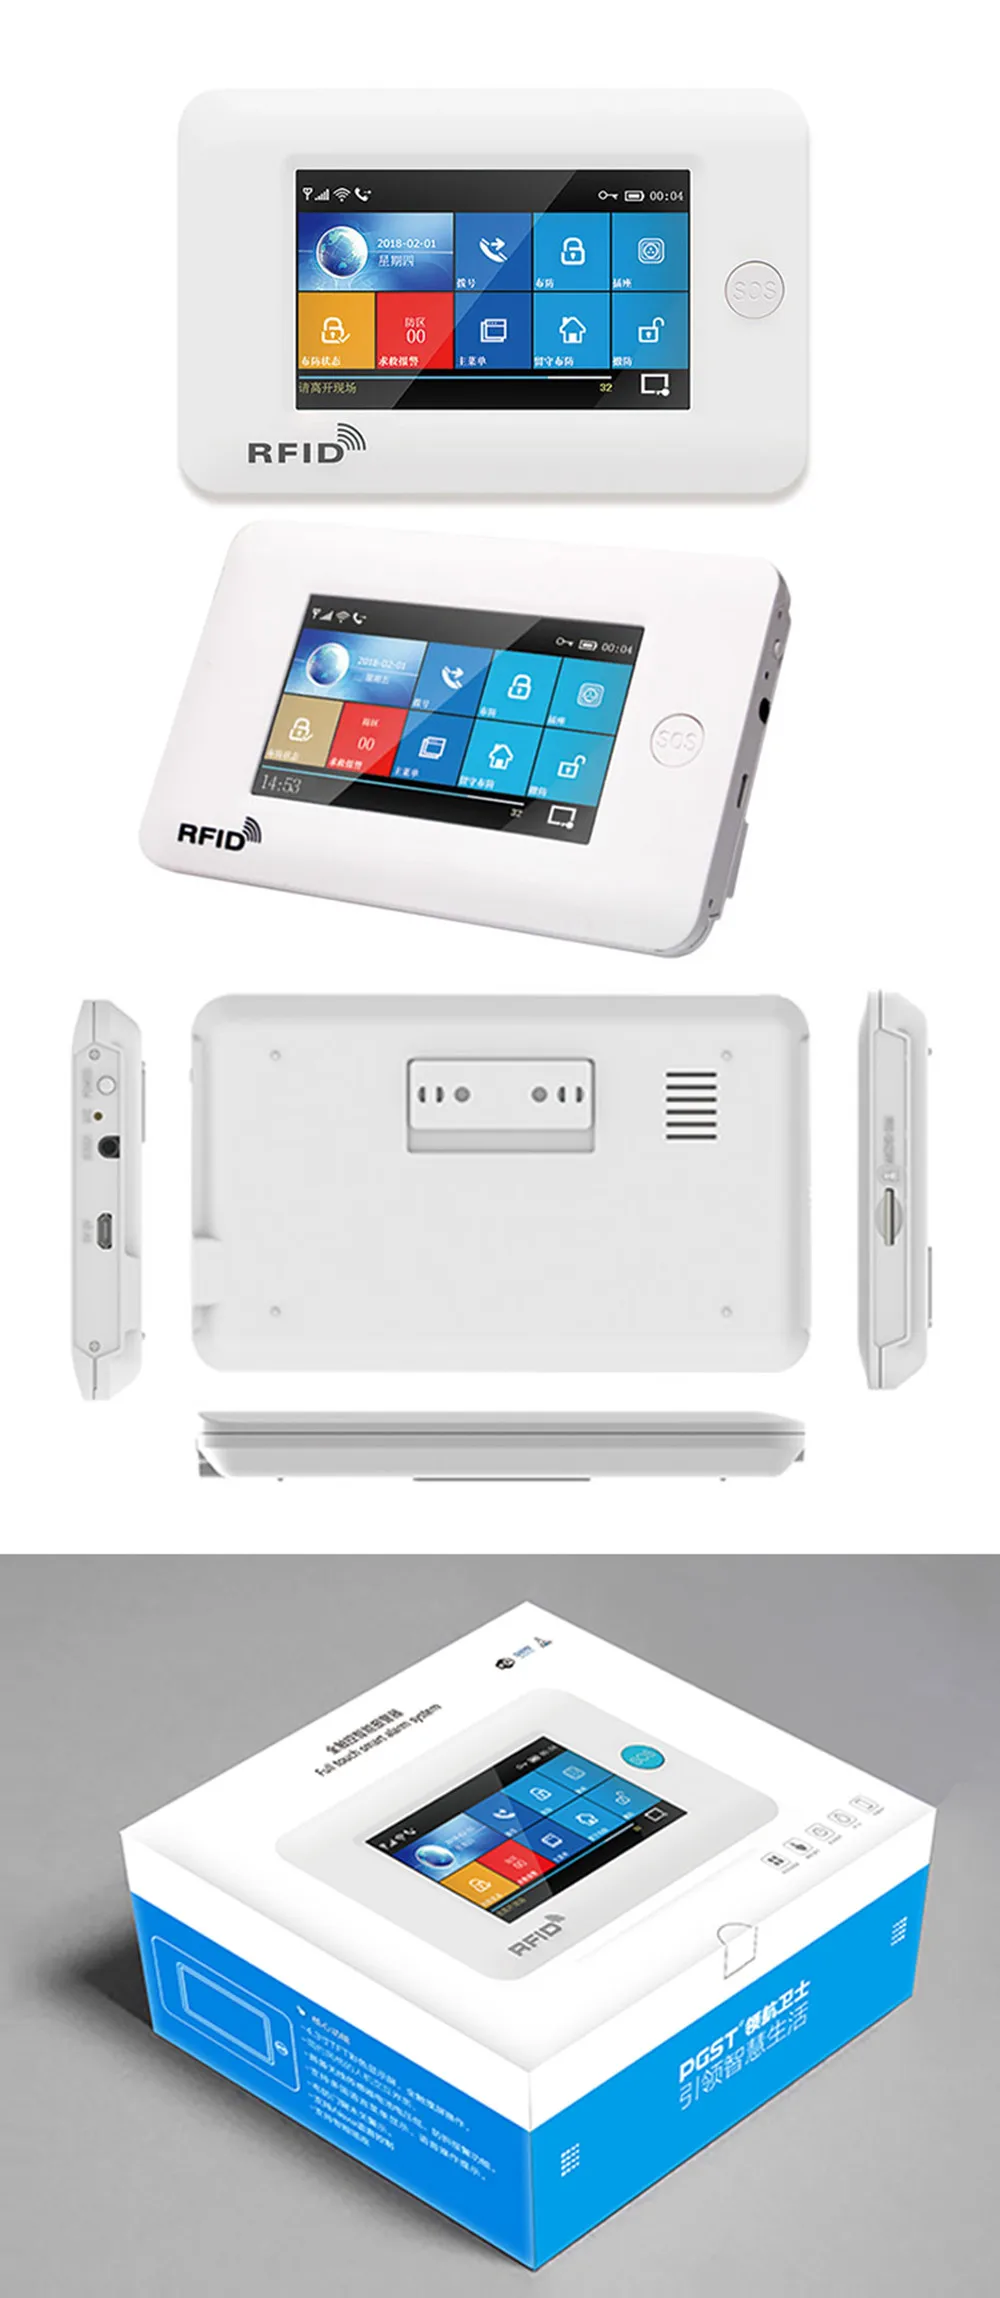 3g Версия TFT Все сенсорный экран wifi gprs беспроводной приложение дистанционное управление Умный дом охранной сигнализации системы s для IOS/Android системы